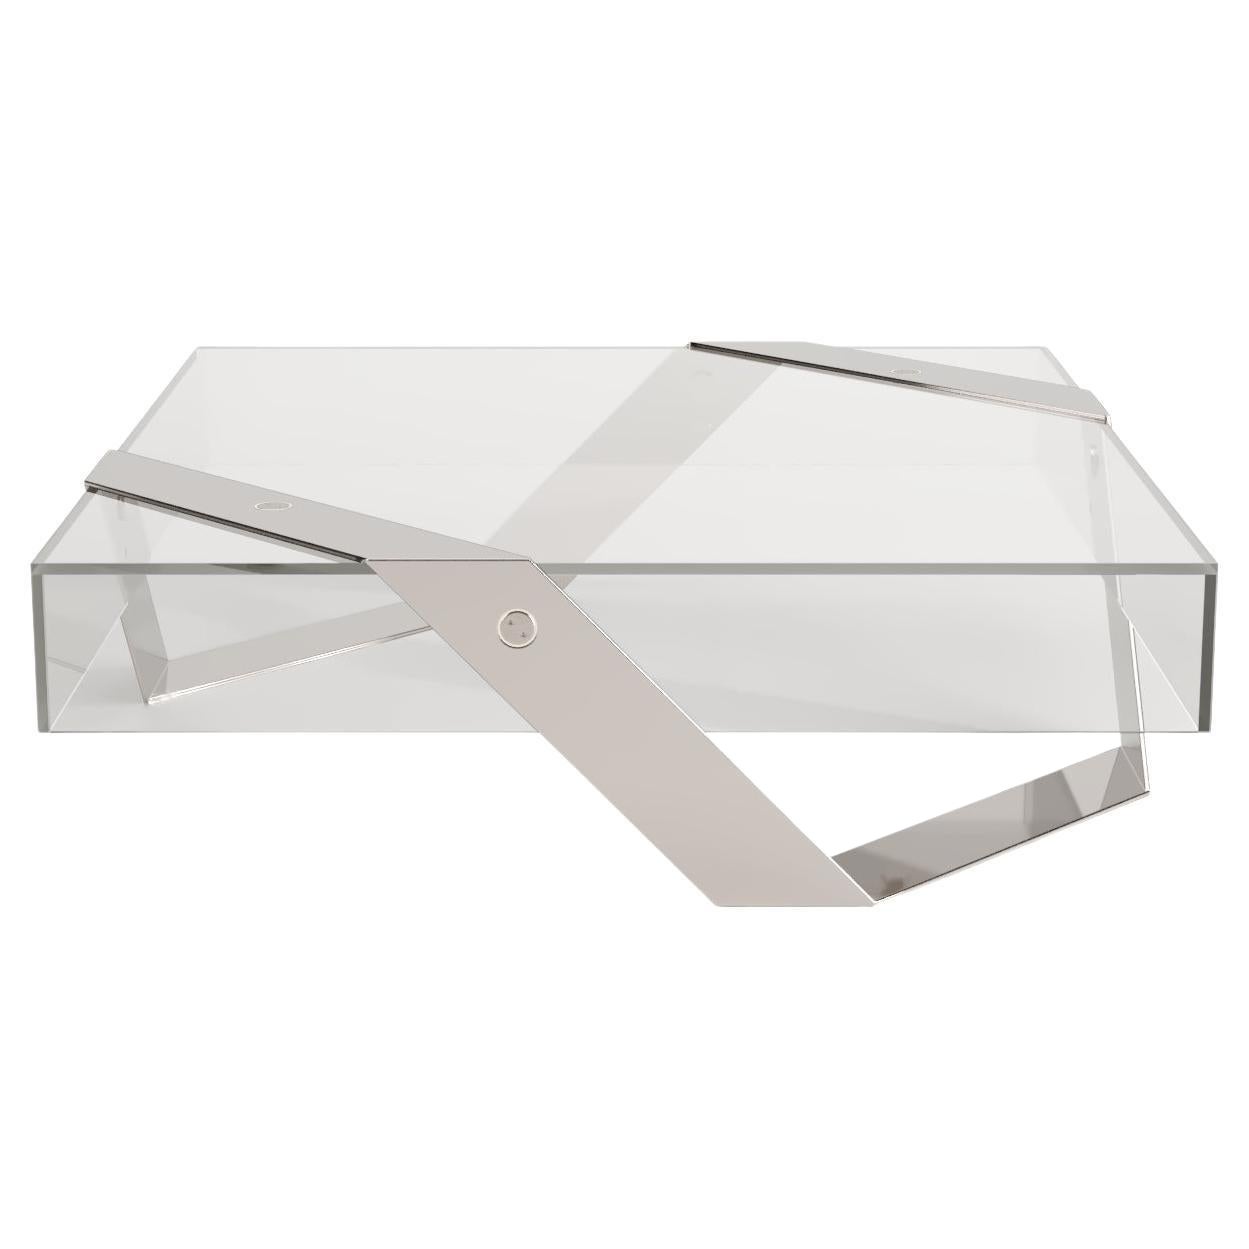 Table basse centrale carrée moderne et minimaliste en verre et acier inoxydable poli